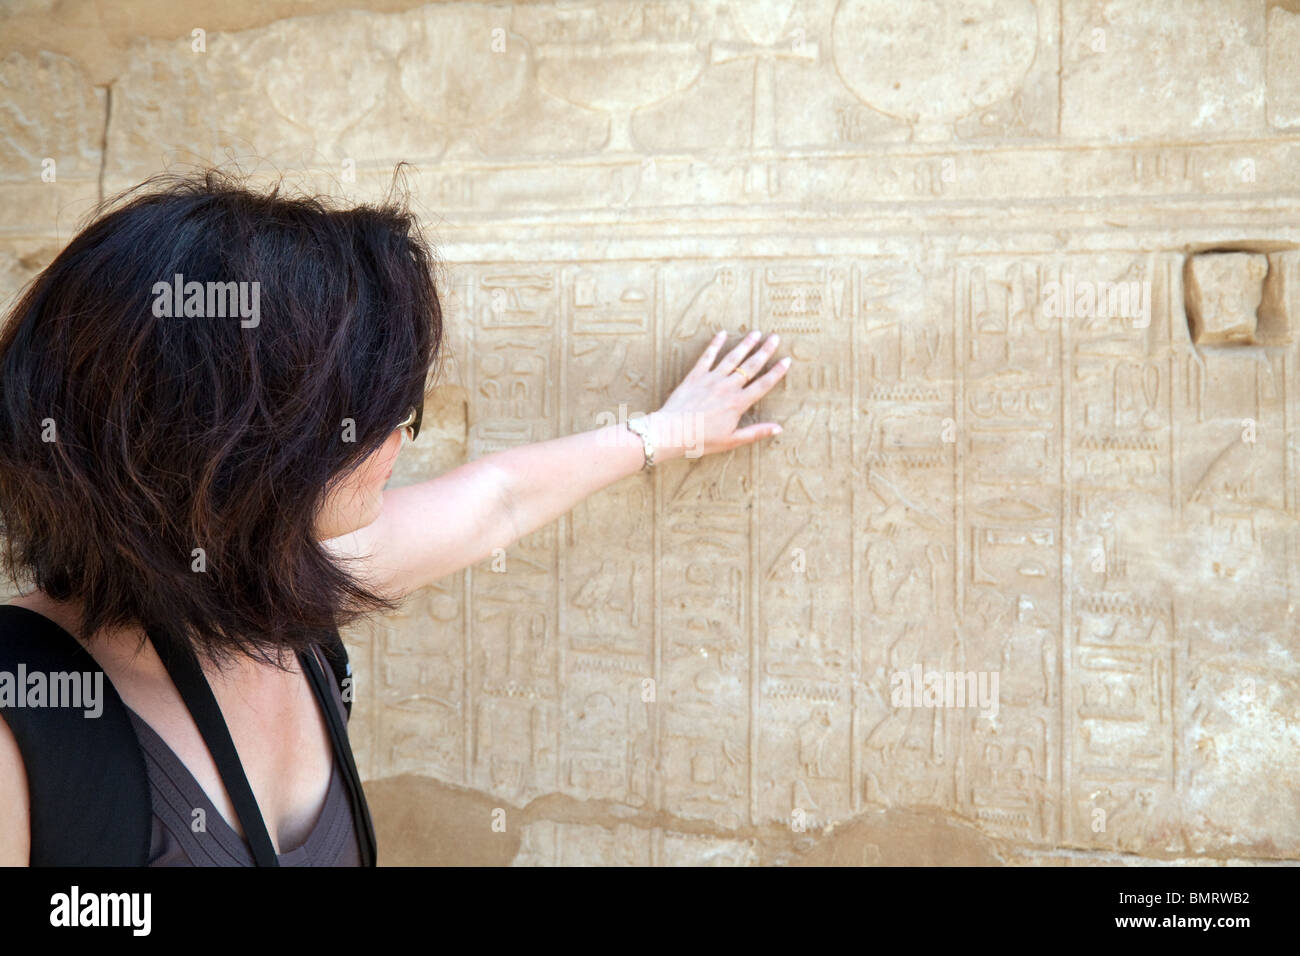 Une touriste examinant les hiéroglyphes sculptés, Temple de Karnak, Louxor, Egypte Banque D'Images